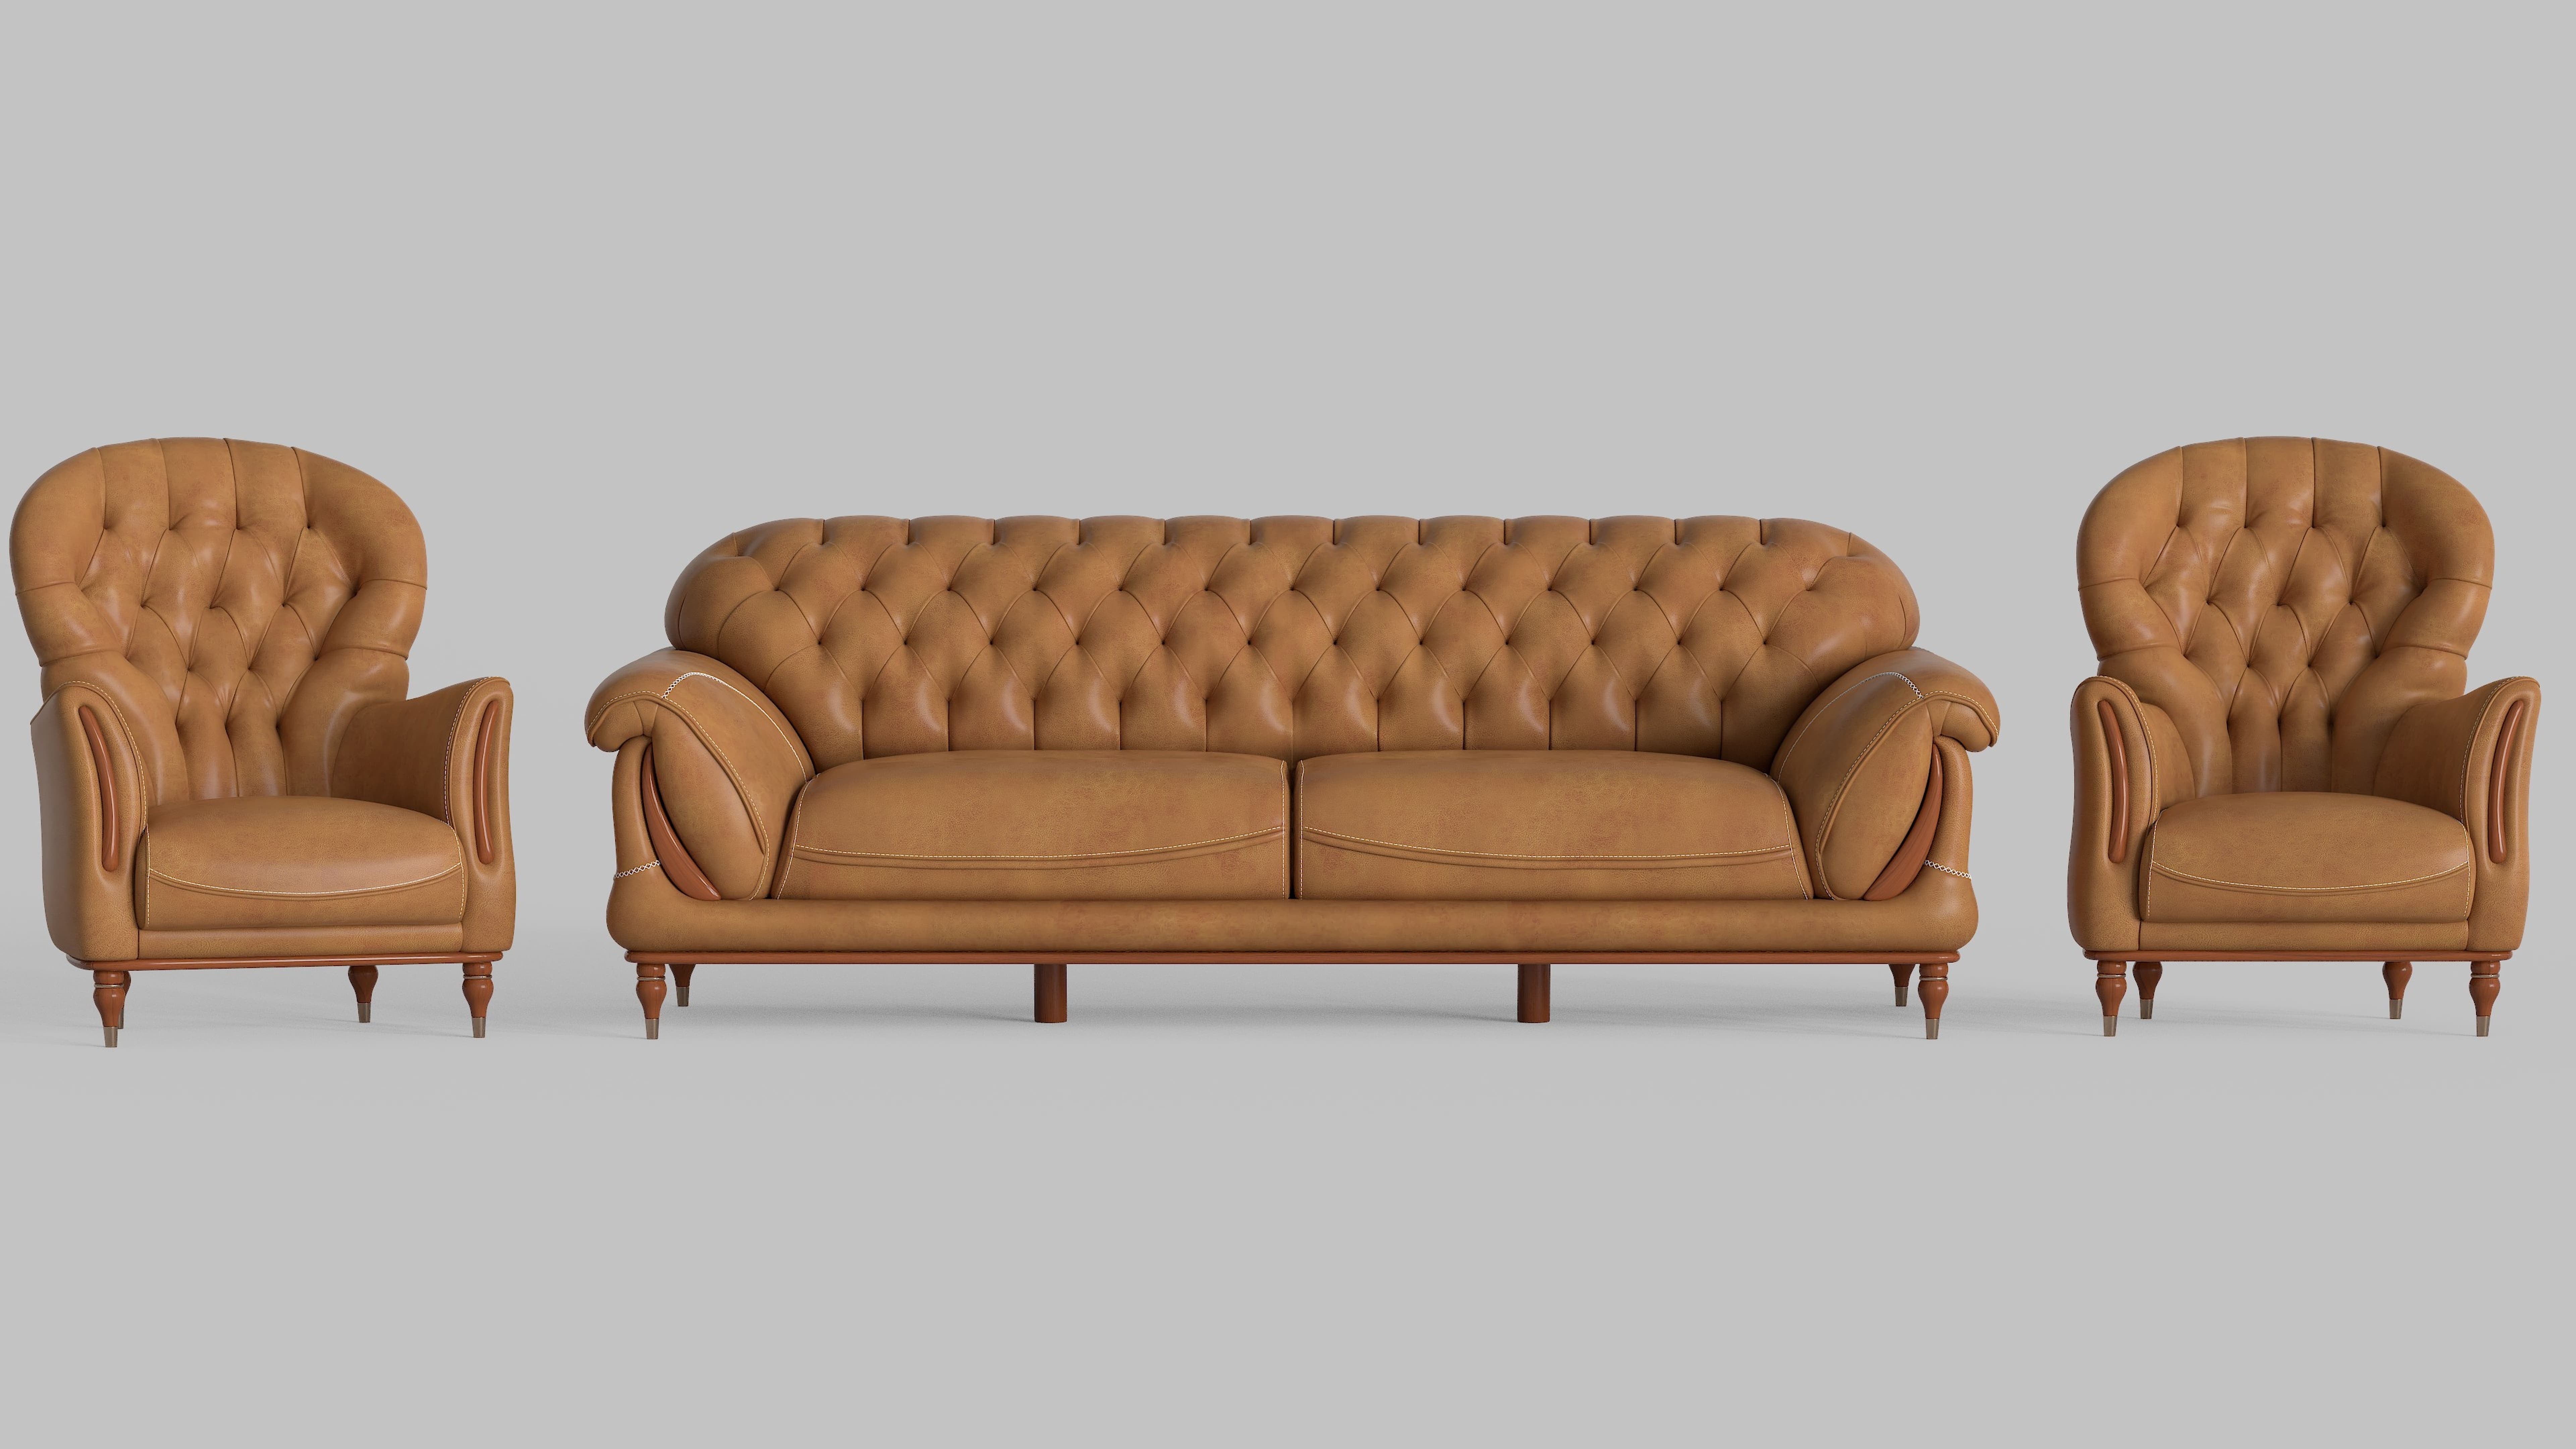 Upholstered furniture 